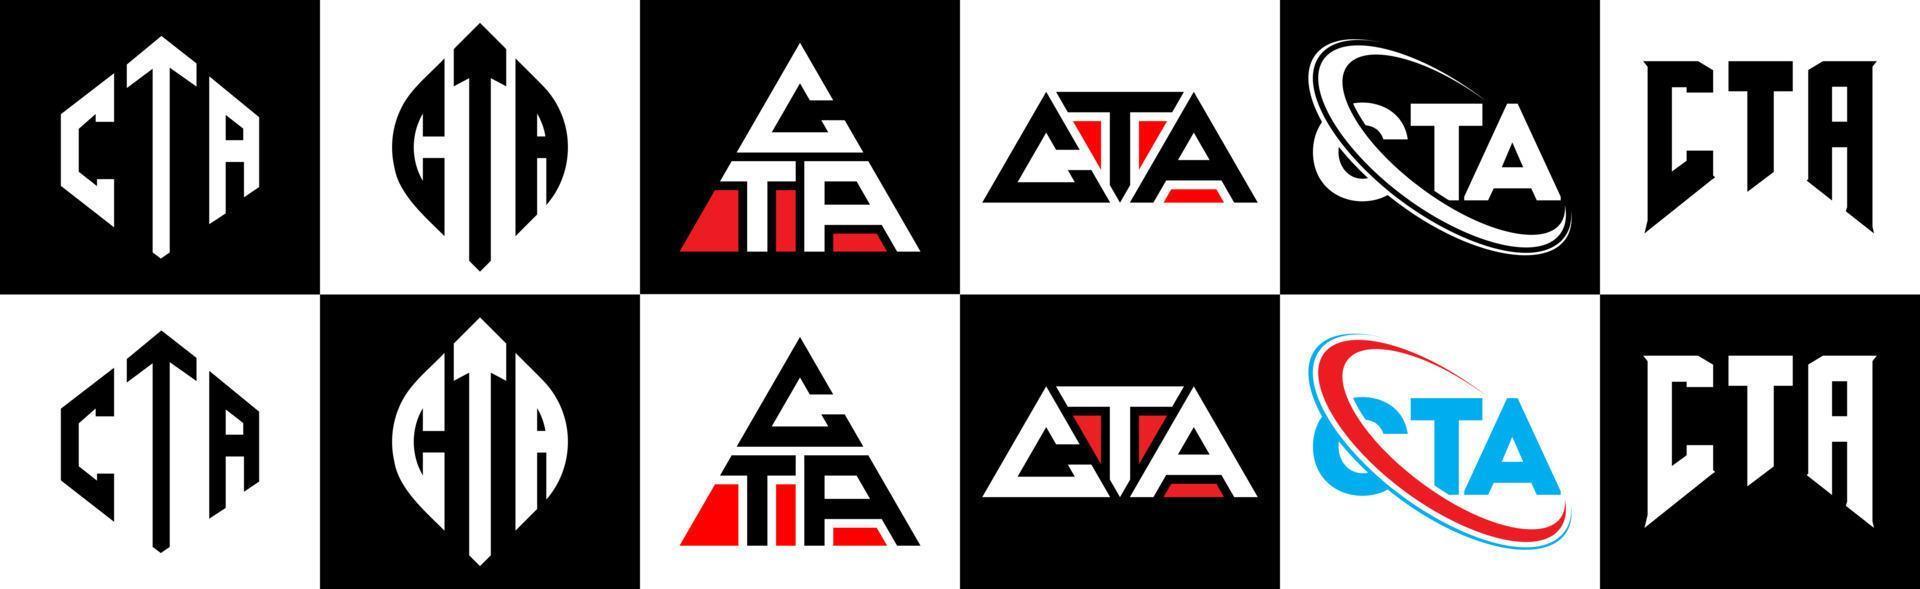 création de logo de lettre cta en six styles. cta polygone, cercle, triangle, hexagone, style plat et simple avec logo de lettre de variation de couleur noir et blanc dans un plan de travail. cta logo minimaliste et classique vecteur